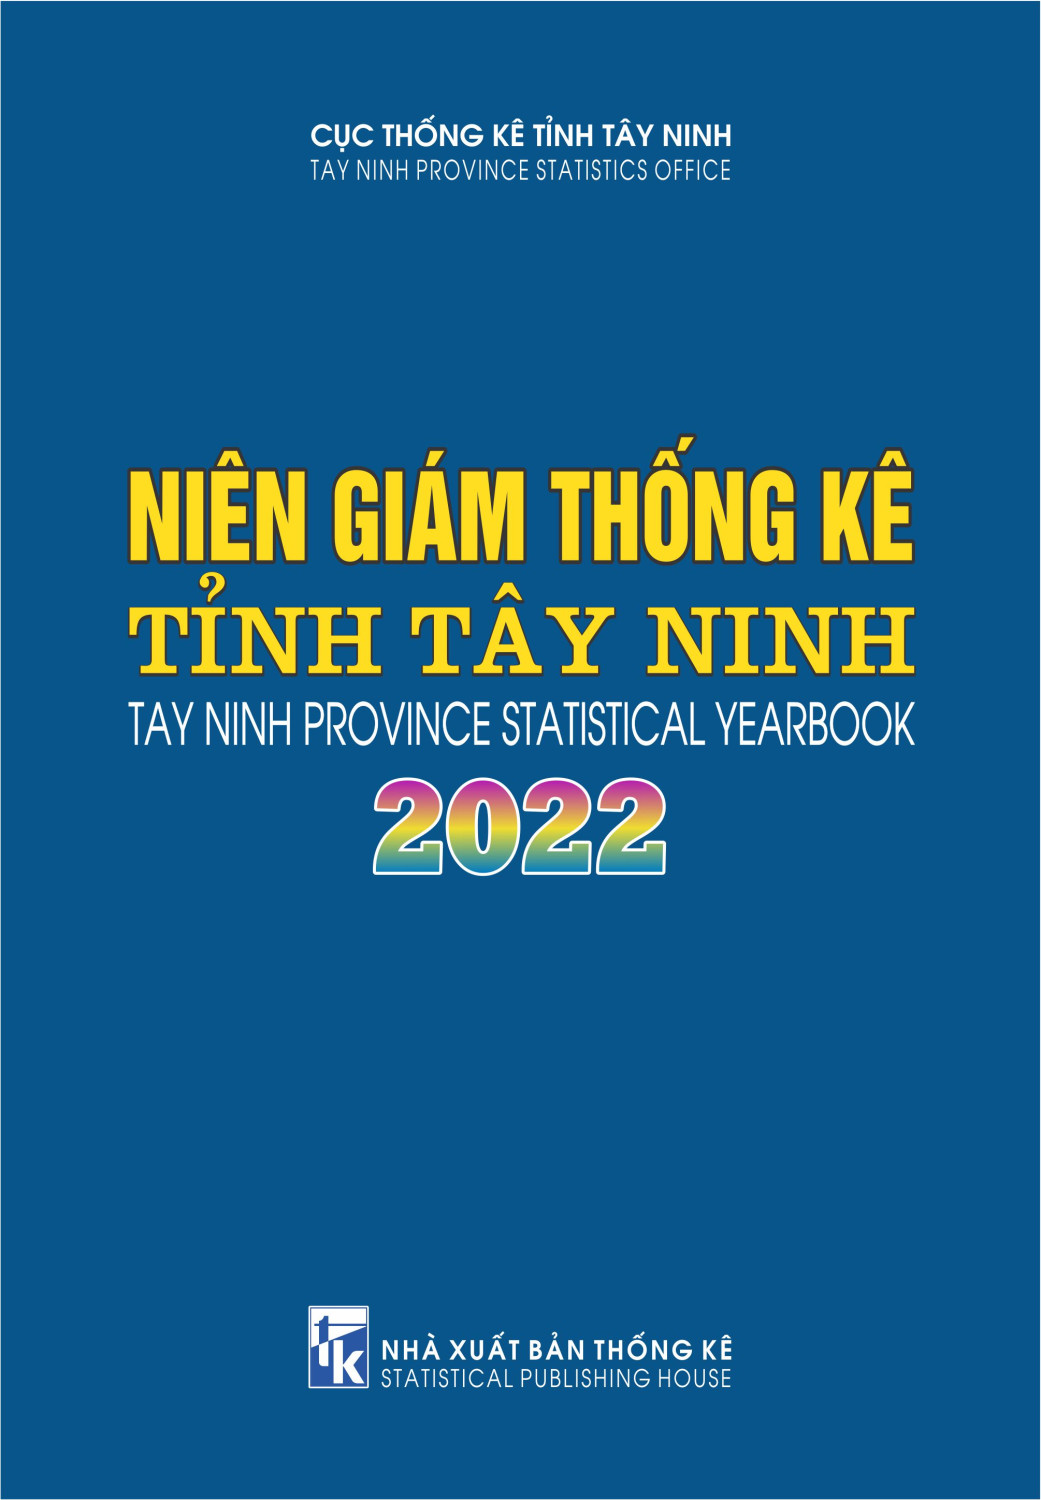 Bia 1 NGTK Tay Ninh 2022